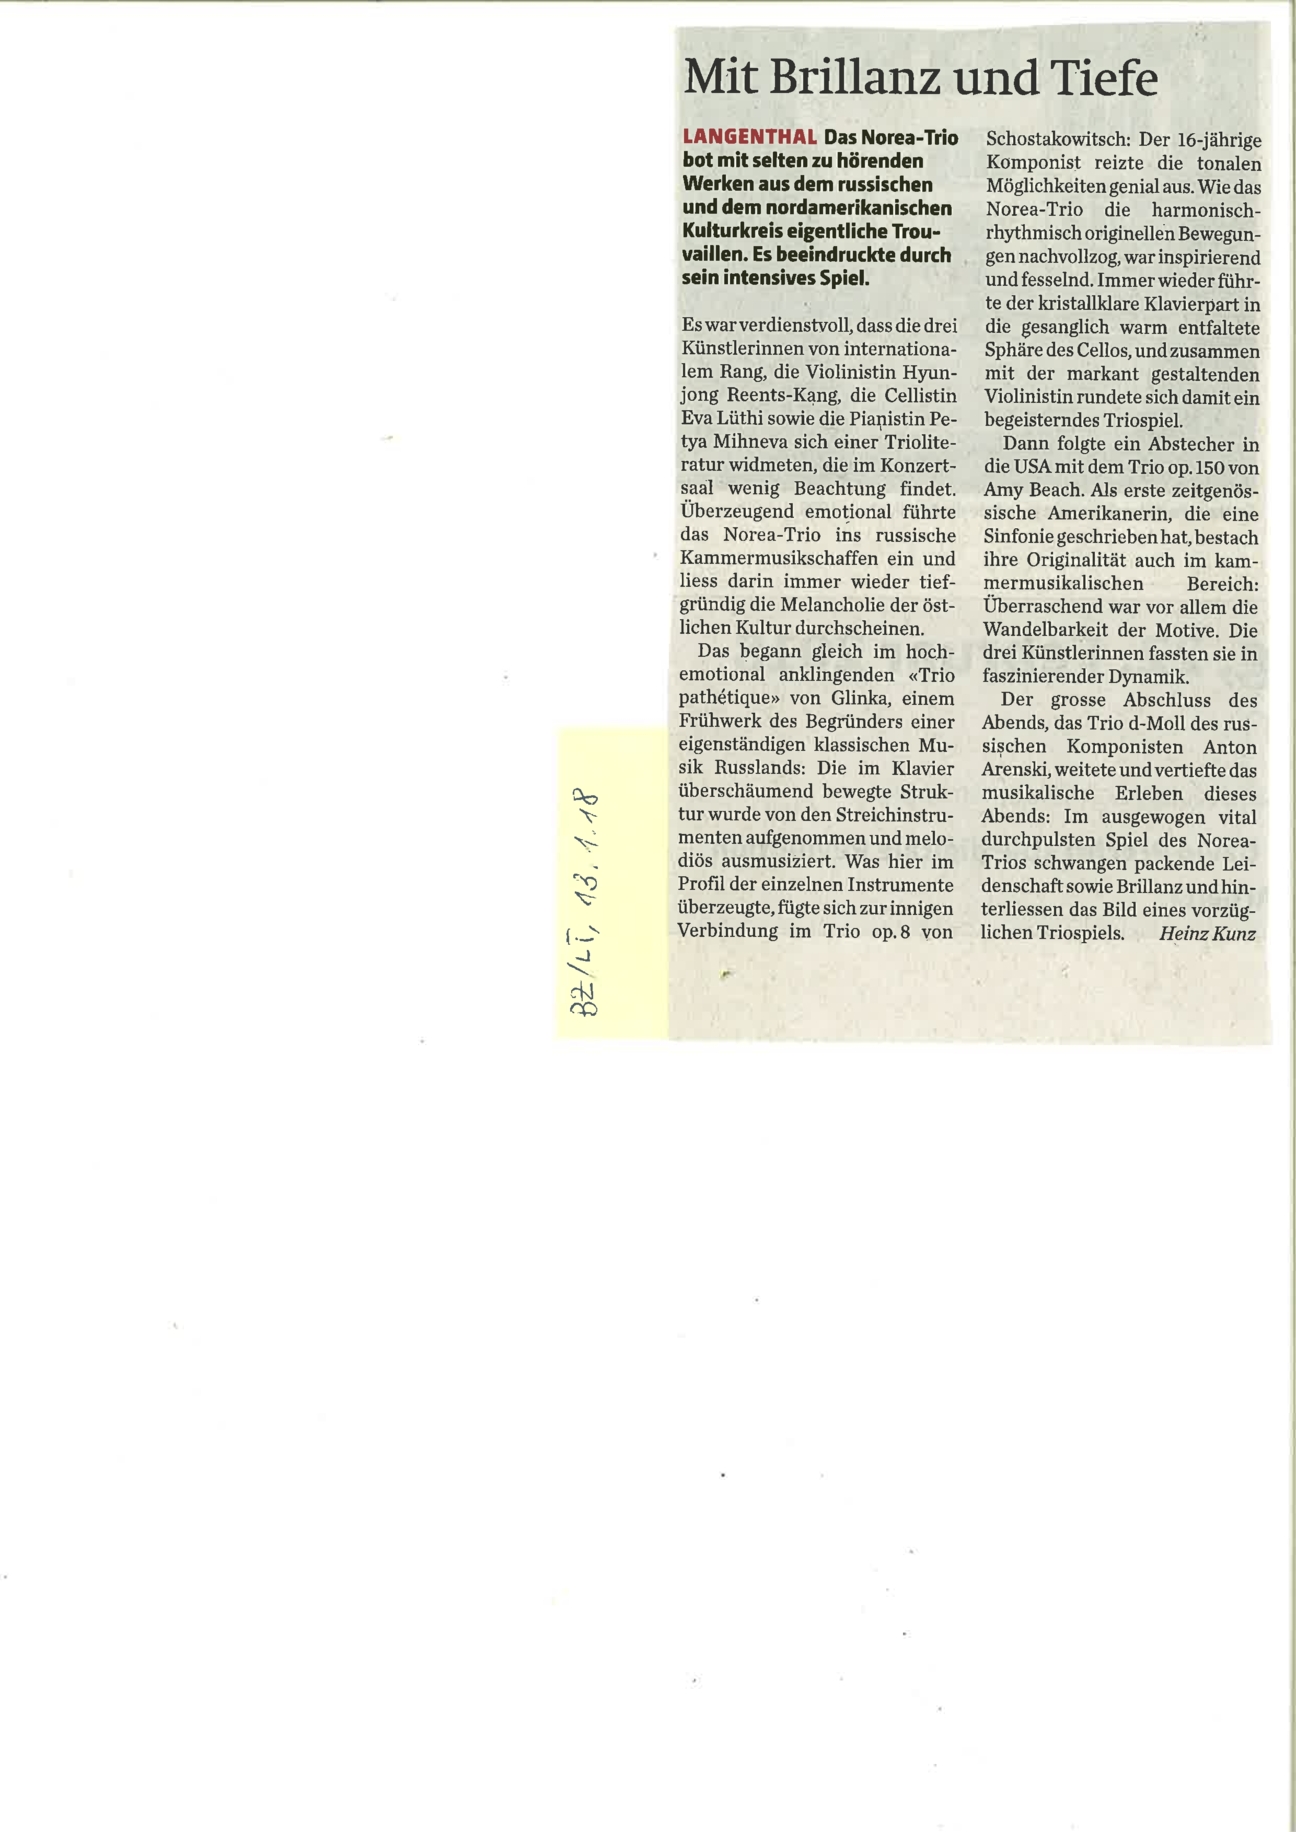 Artikel Berner Zeitung / Langenthaler Tagblatt